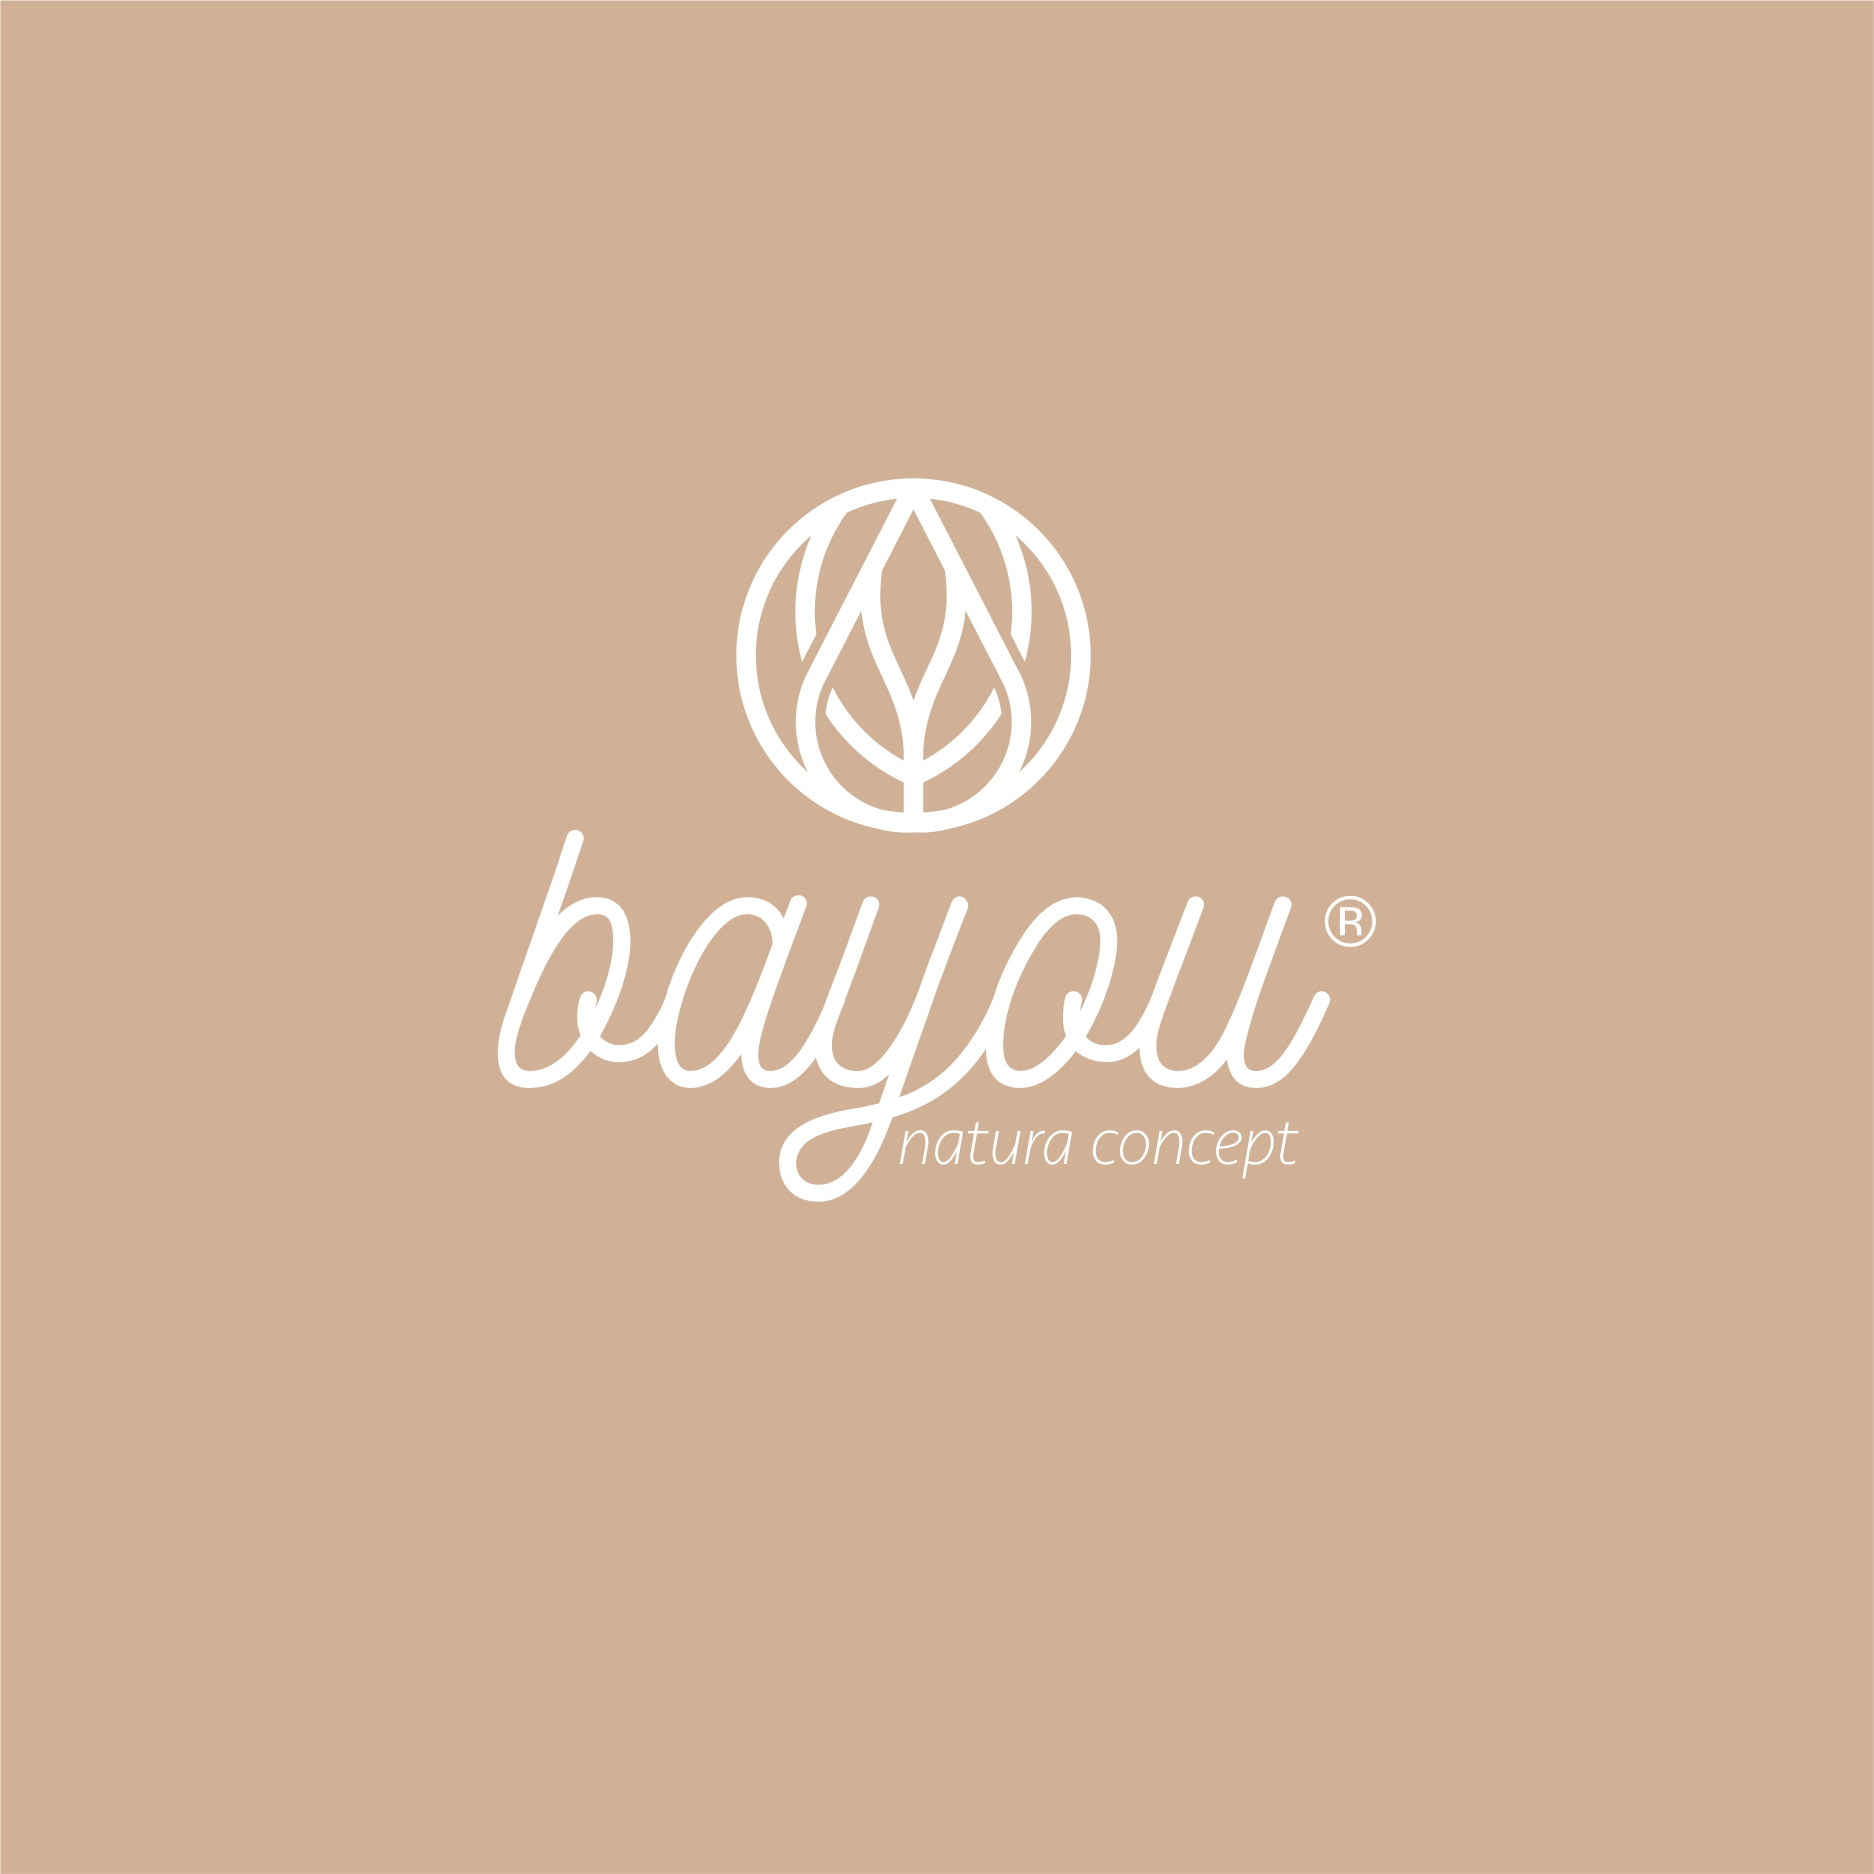 bayou_3